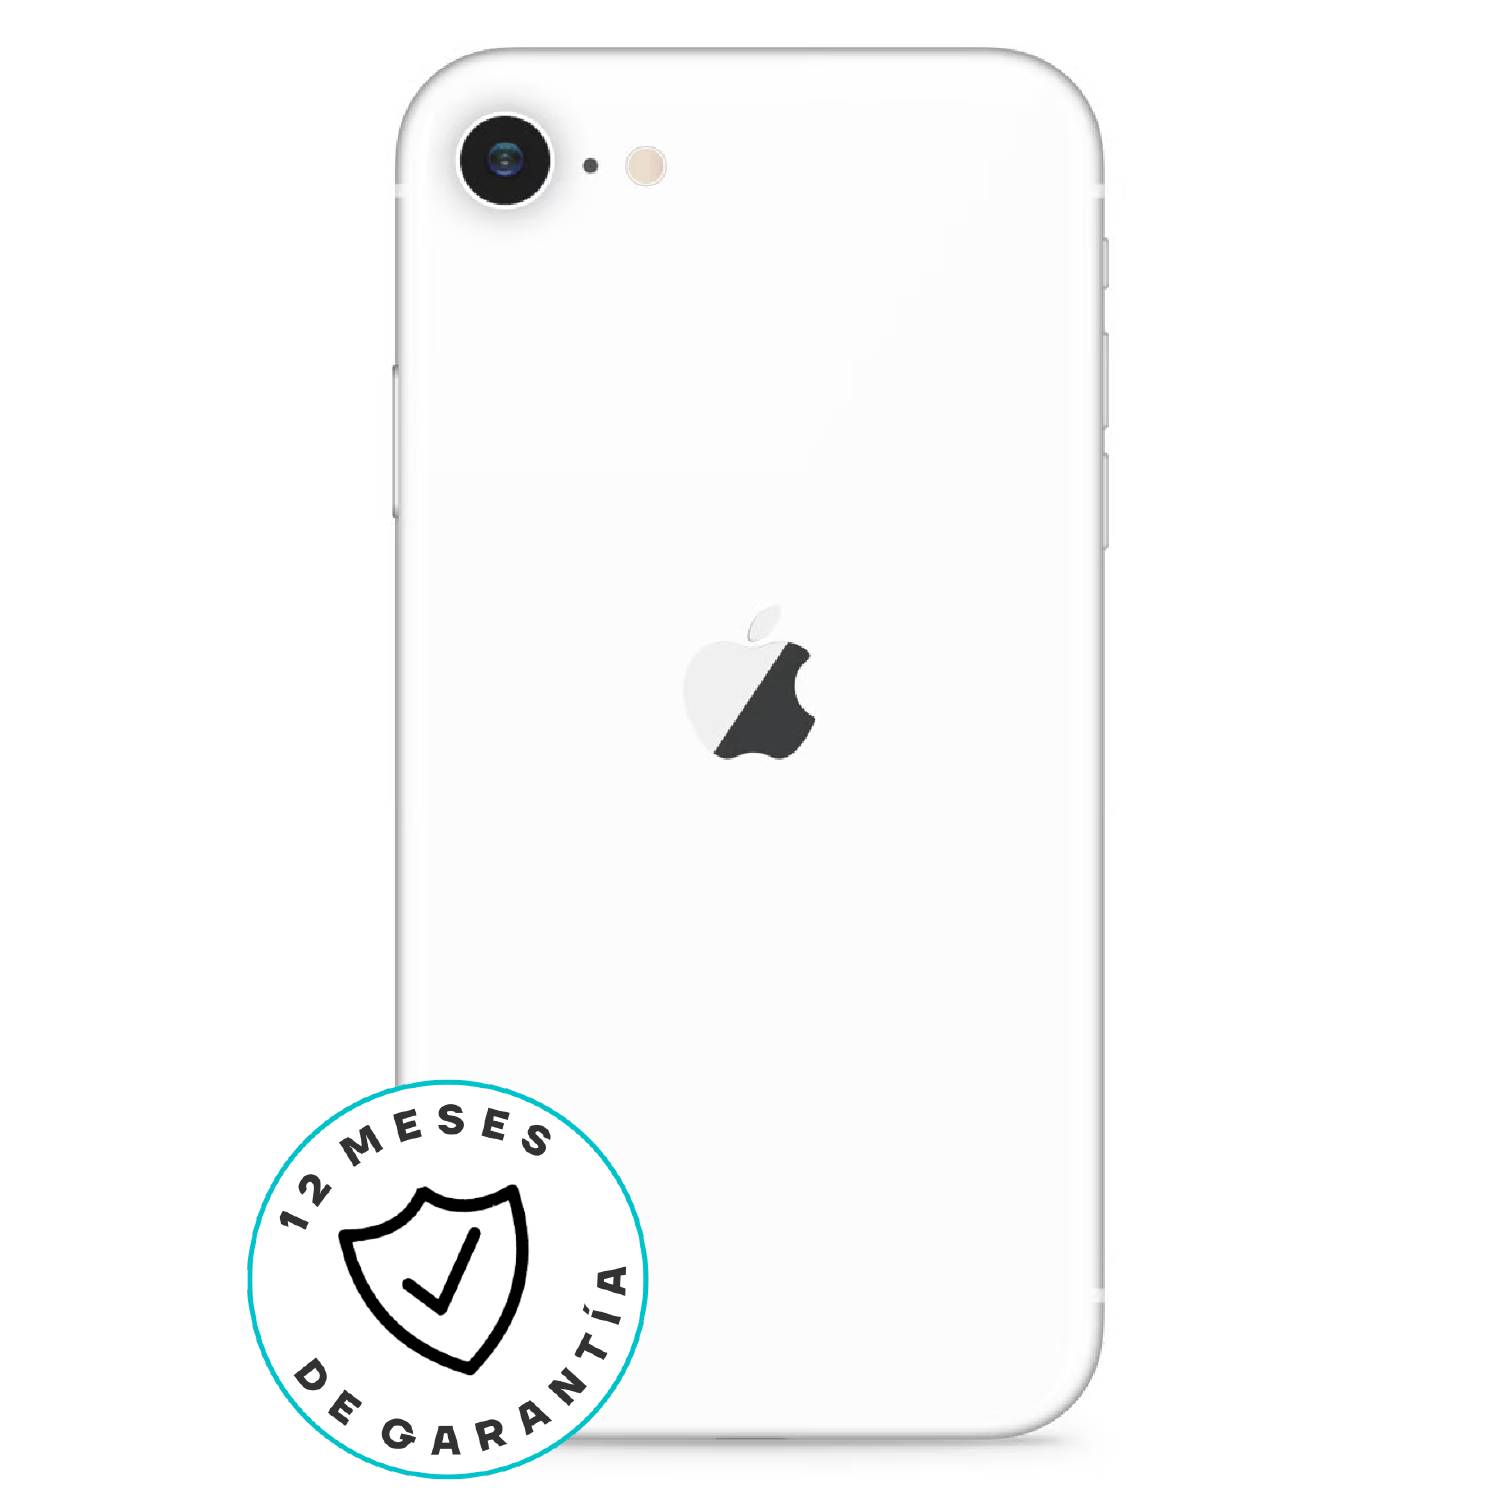 APPLE iPhone SE 2020 64 gb Blanco - Reacondicionado